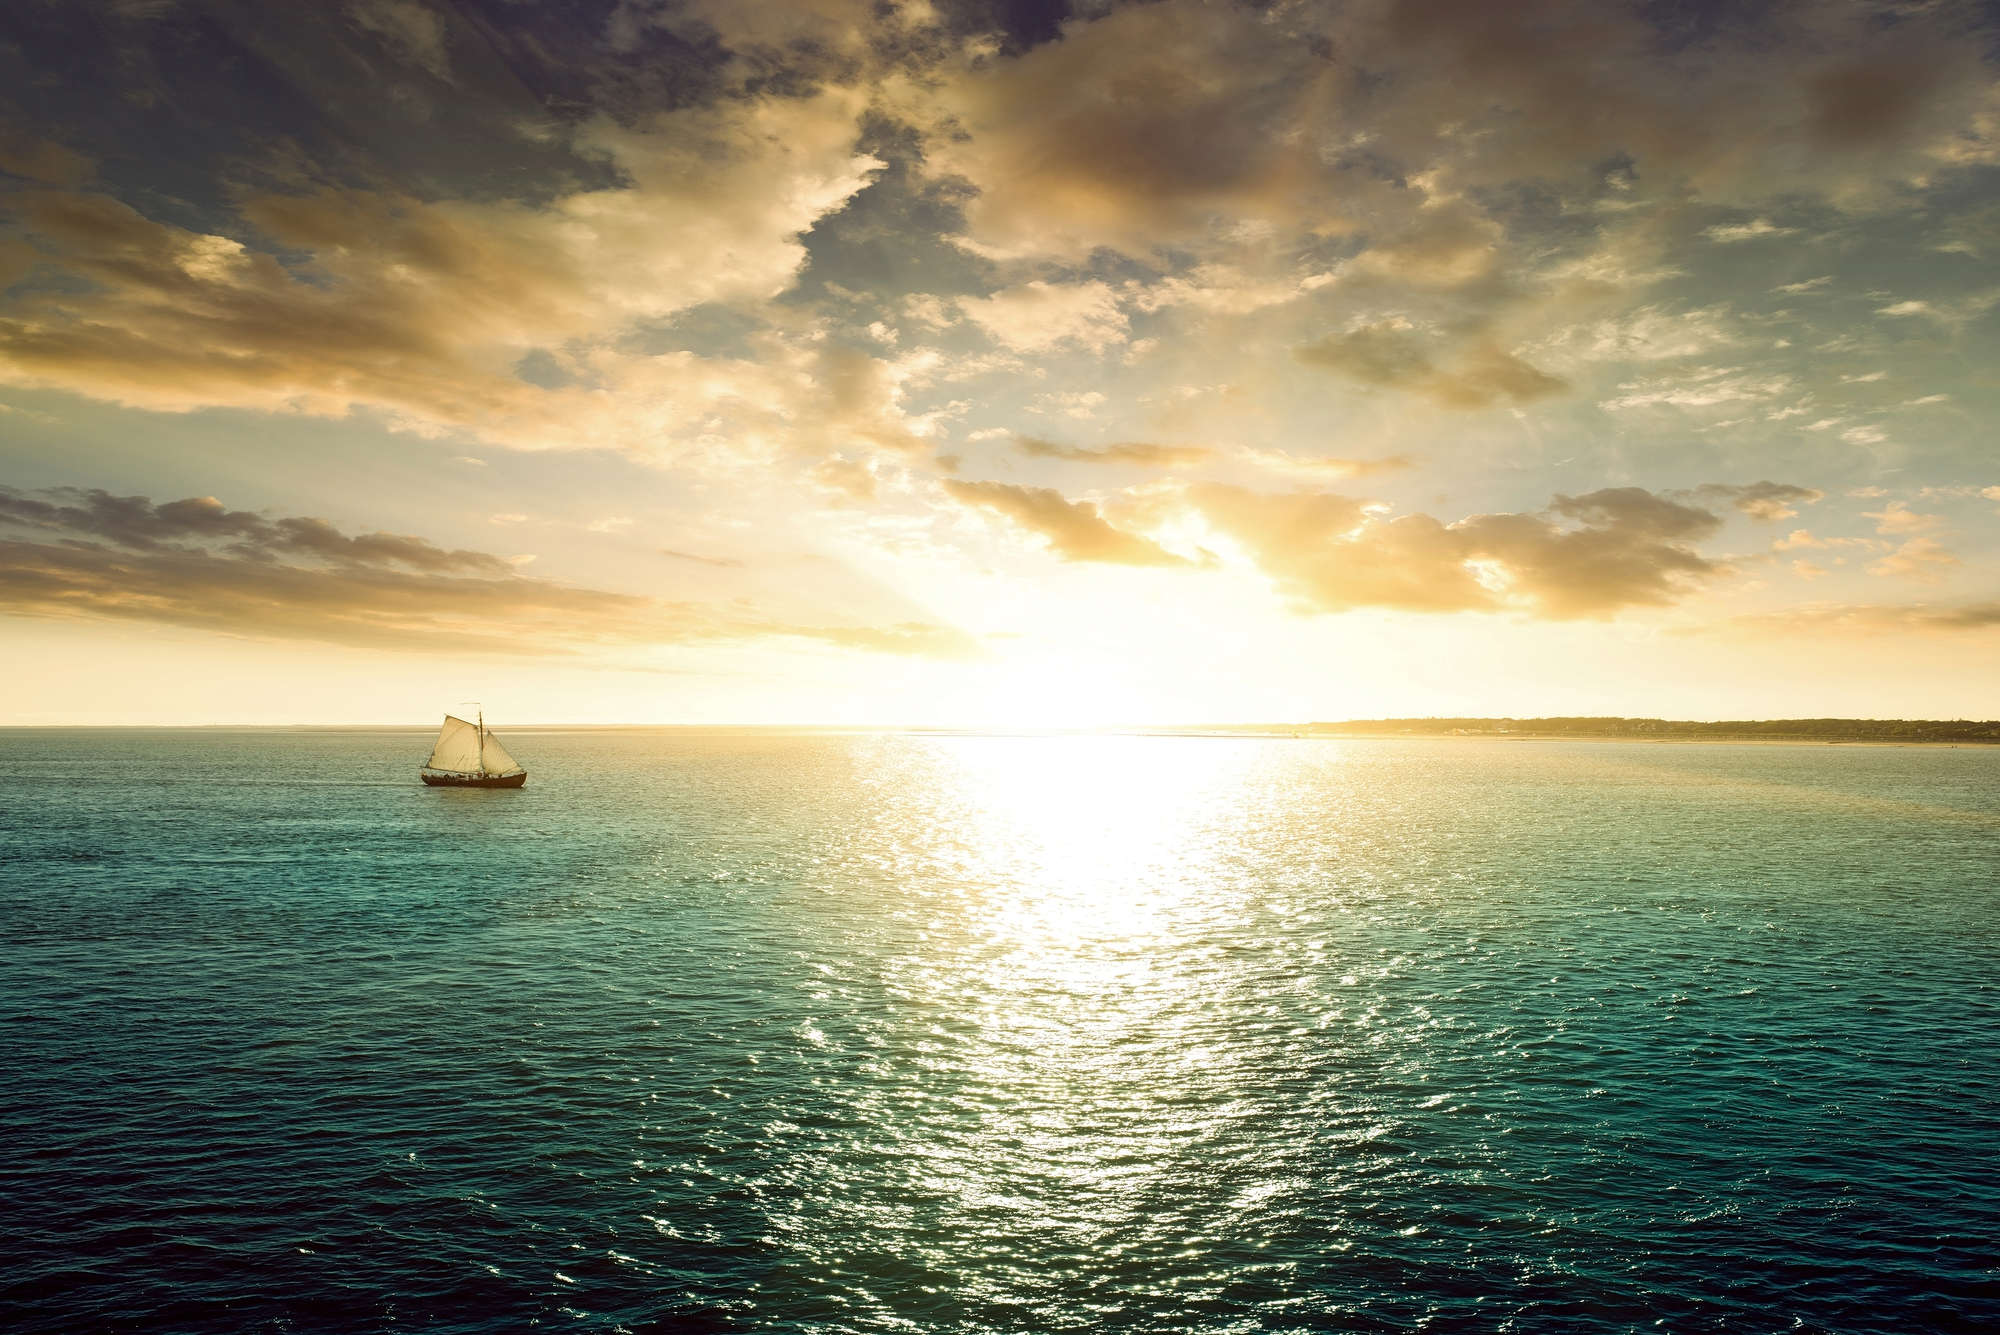             Carta da parati con foto di mare barca a vela al tramonto su vello liscio madreperlato
        